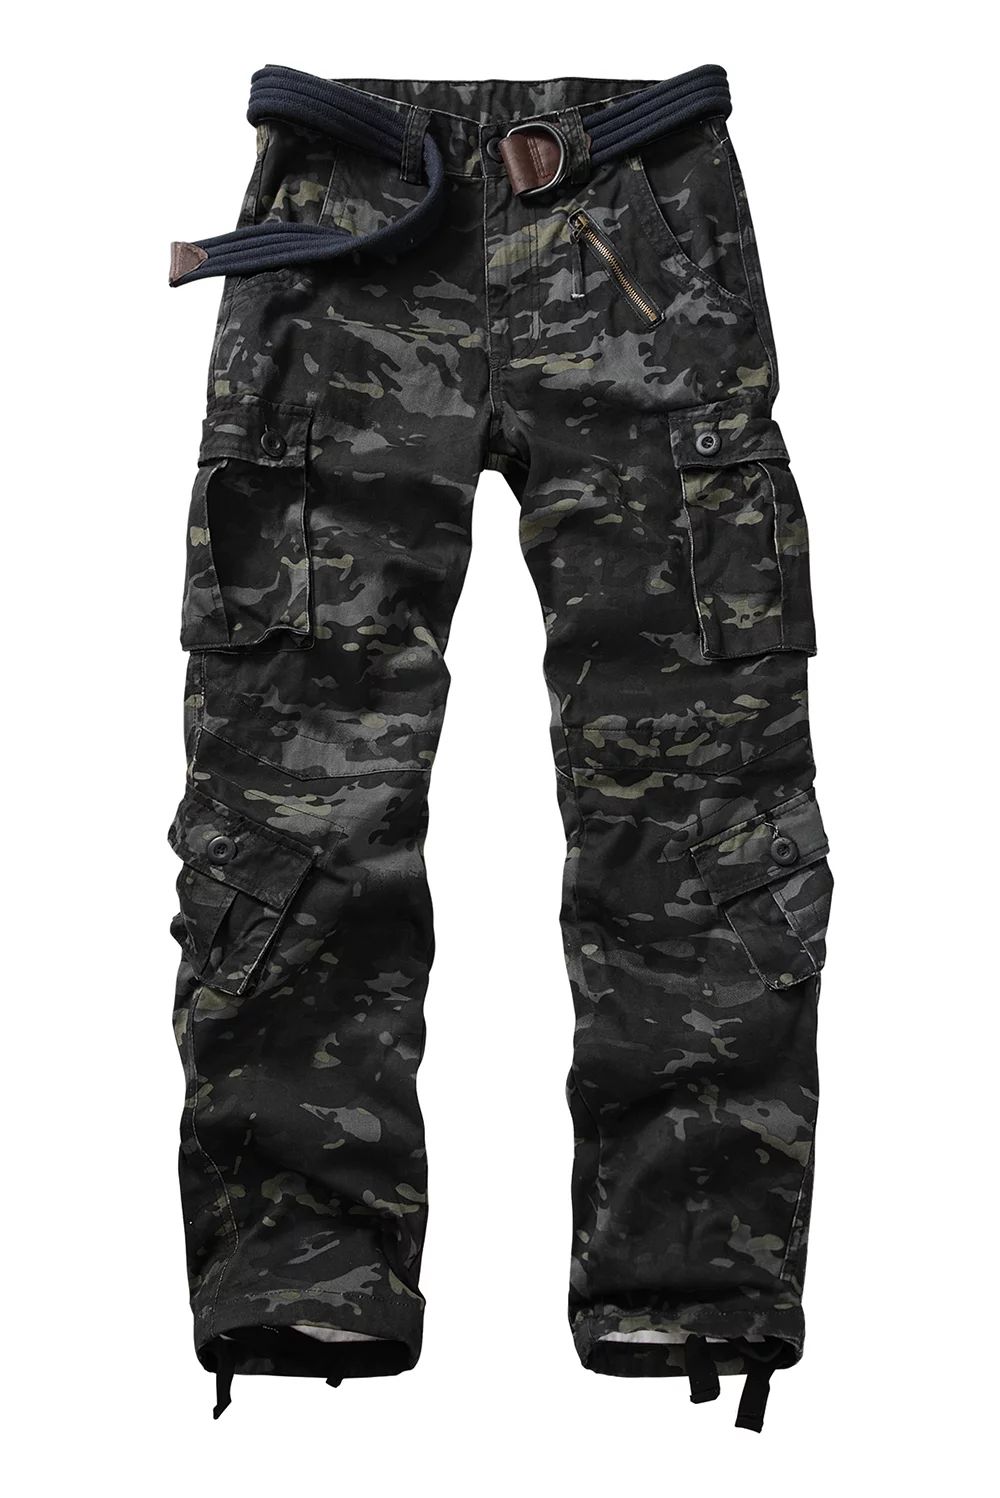 TRGPSG Men's Cargo Pants with 8 Pockets Cotton Cargo Work Pants(No Belt),Dark Camo 42x33 | Walmart (US)